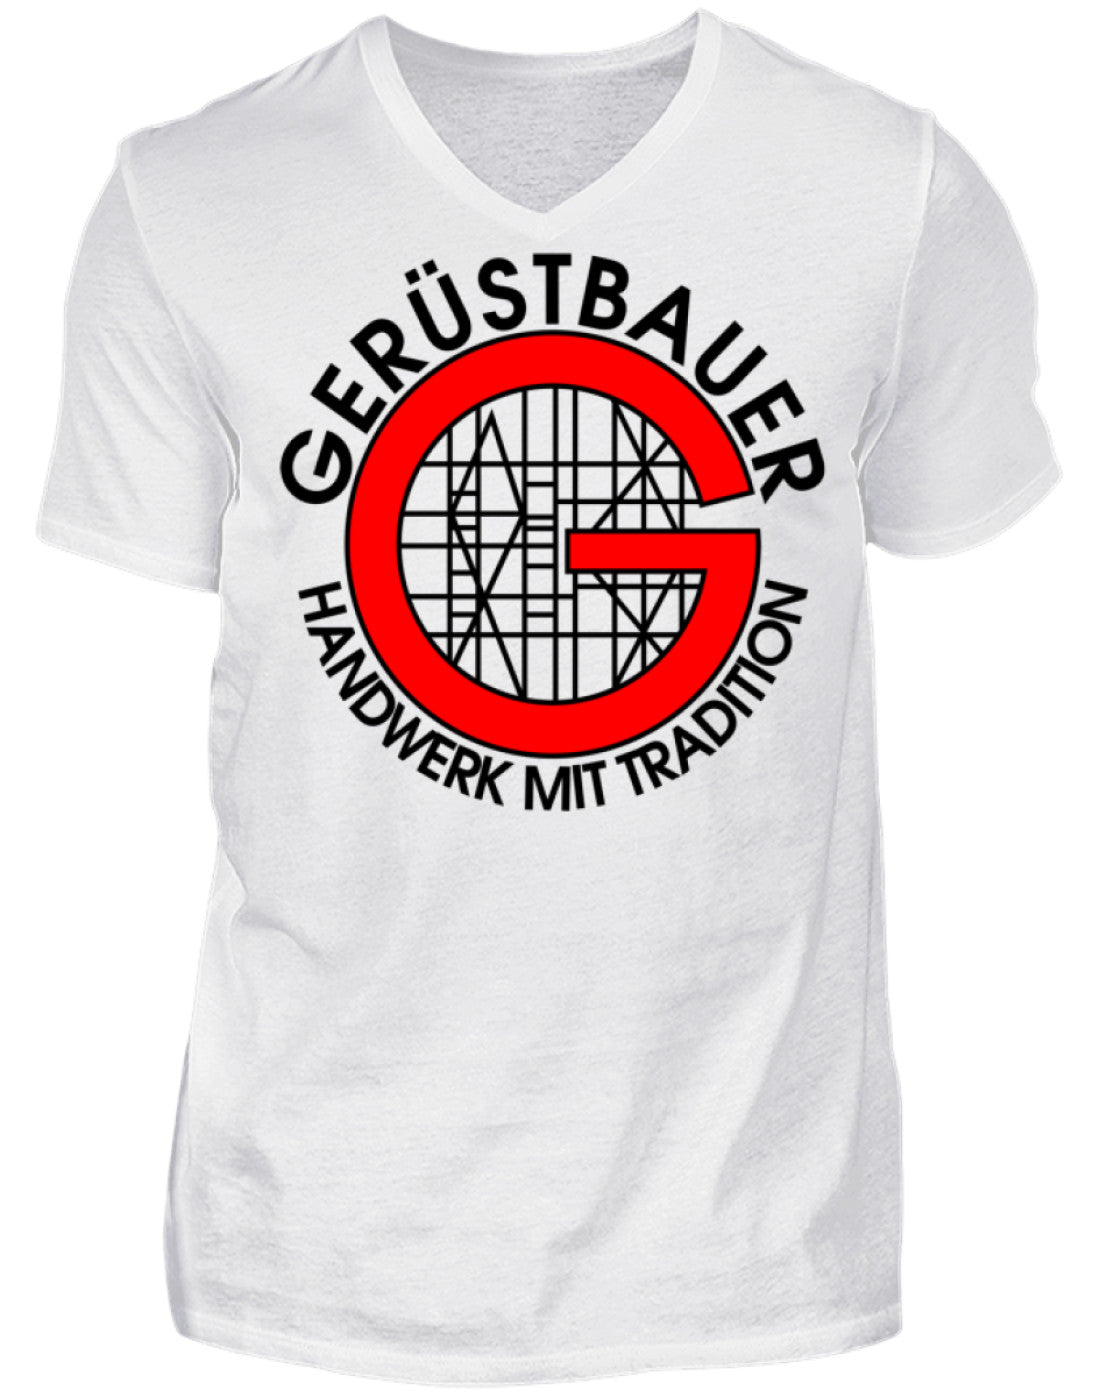 Gerüstbauer / Handwerk mit Tradition  - Herren V-Neck Shirt €21.95 Gerüstbauer - Shop >>